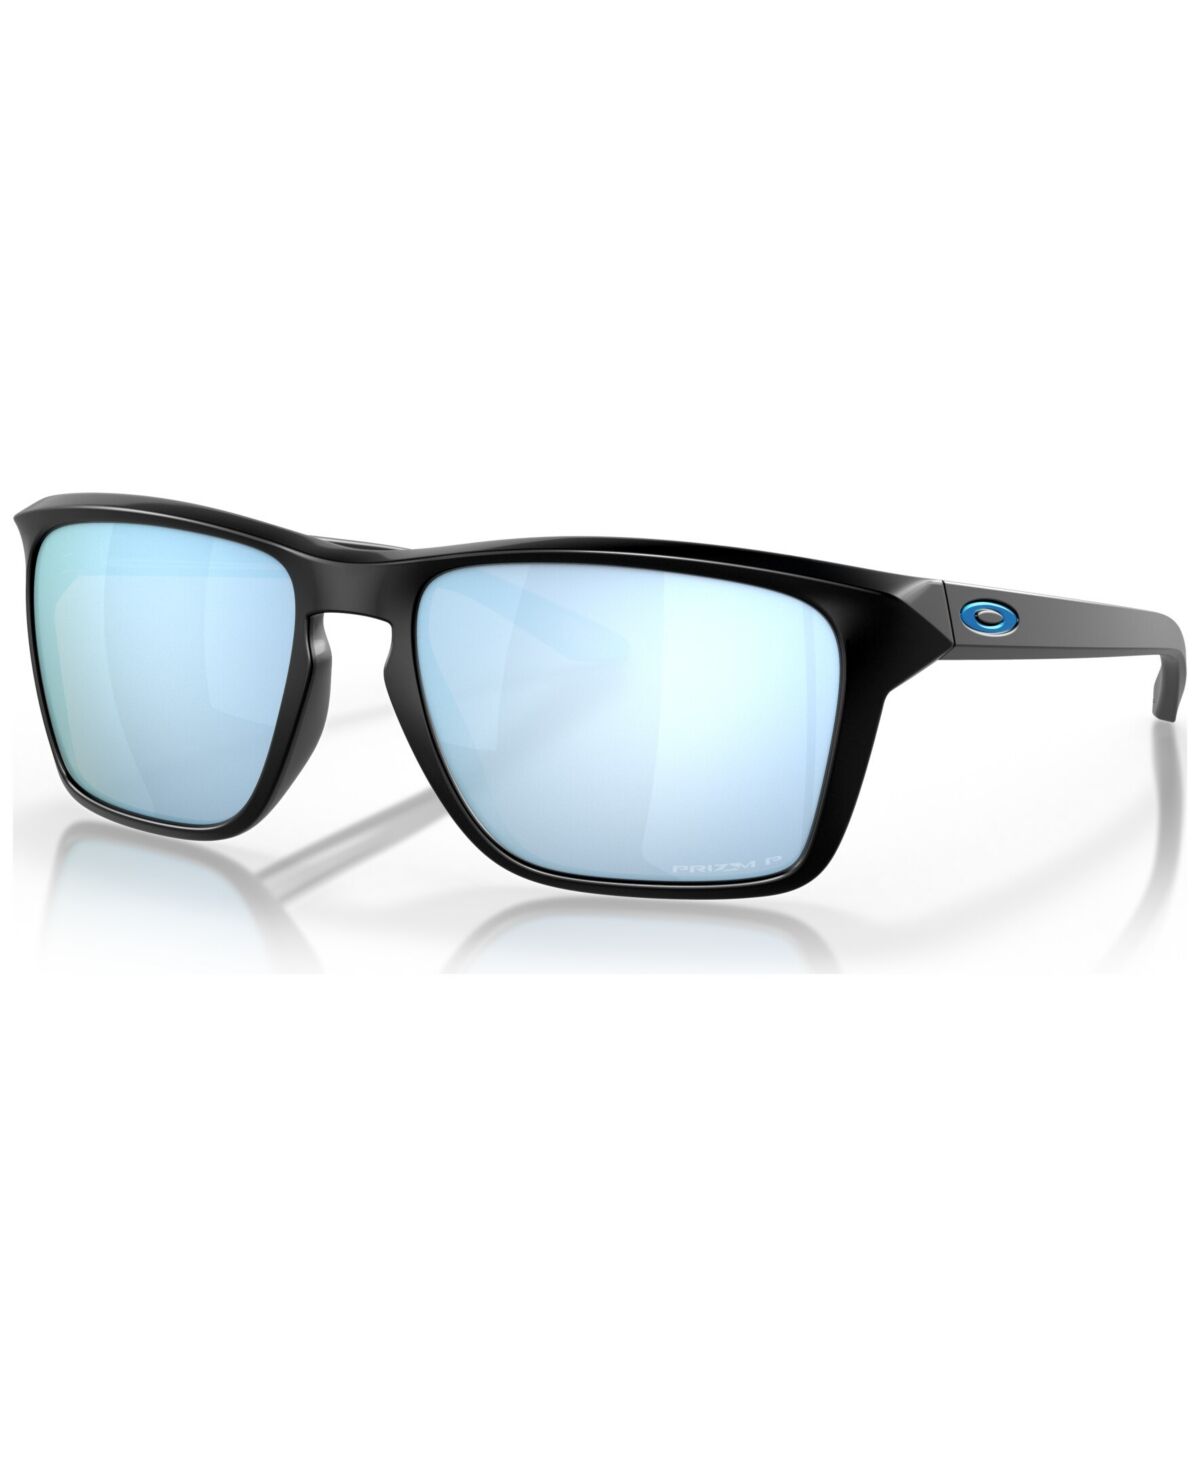 Oakley Men's Polarized Sunglasses, OO9448-2760 - Matte Black